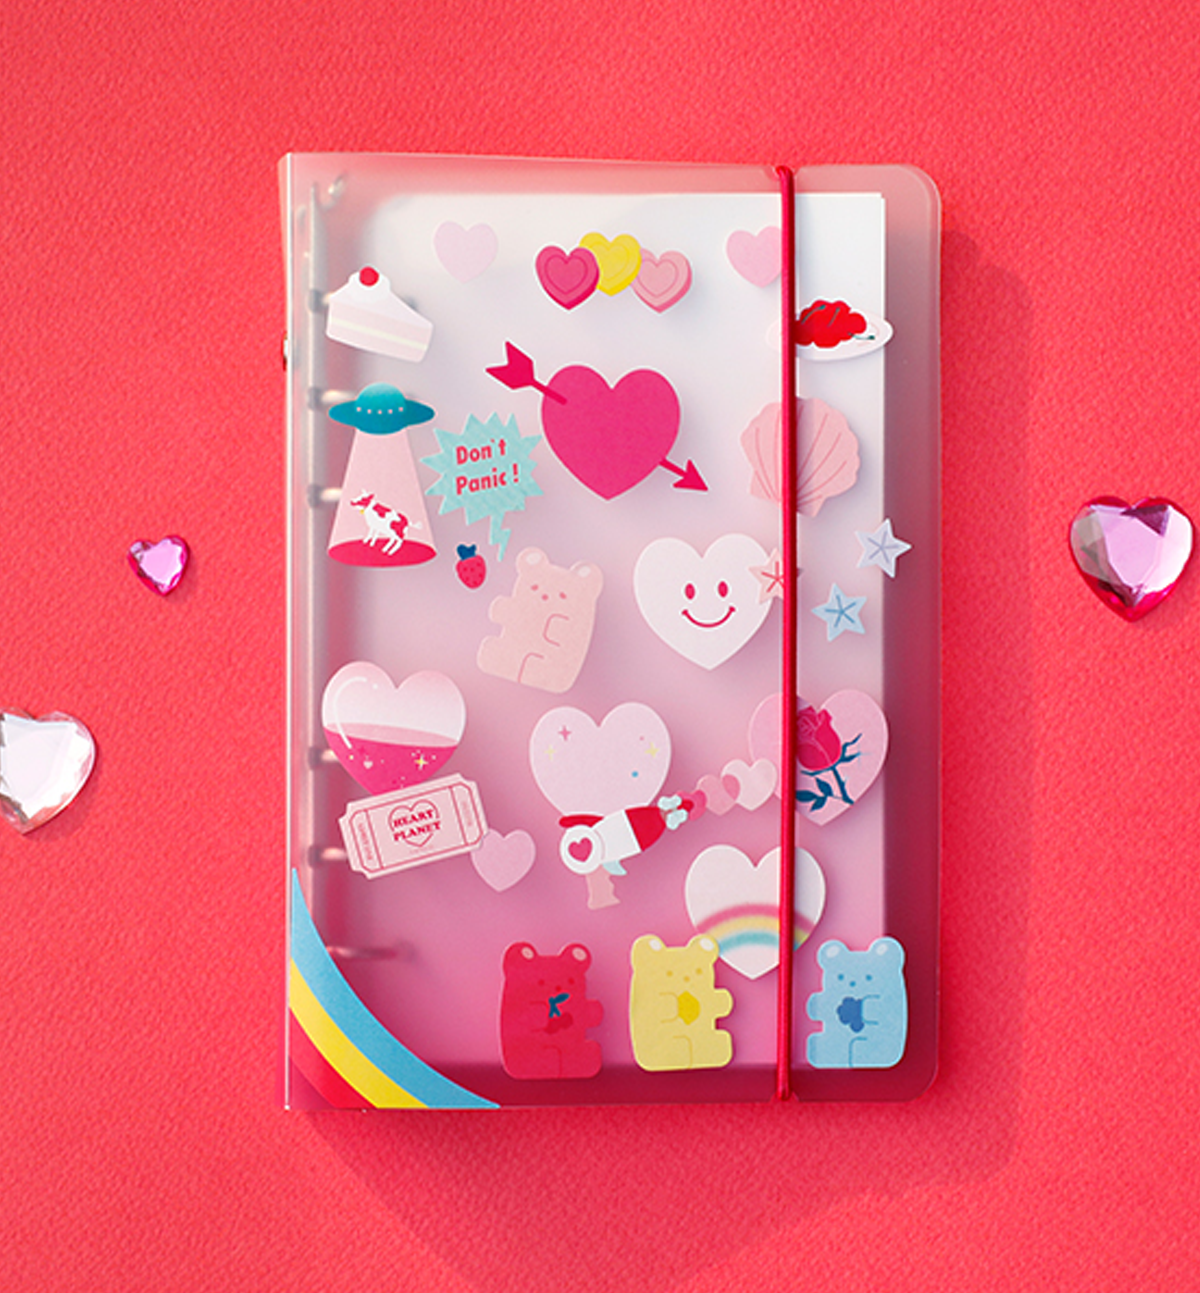 Love & Piece Deco Sticker